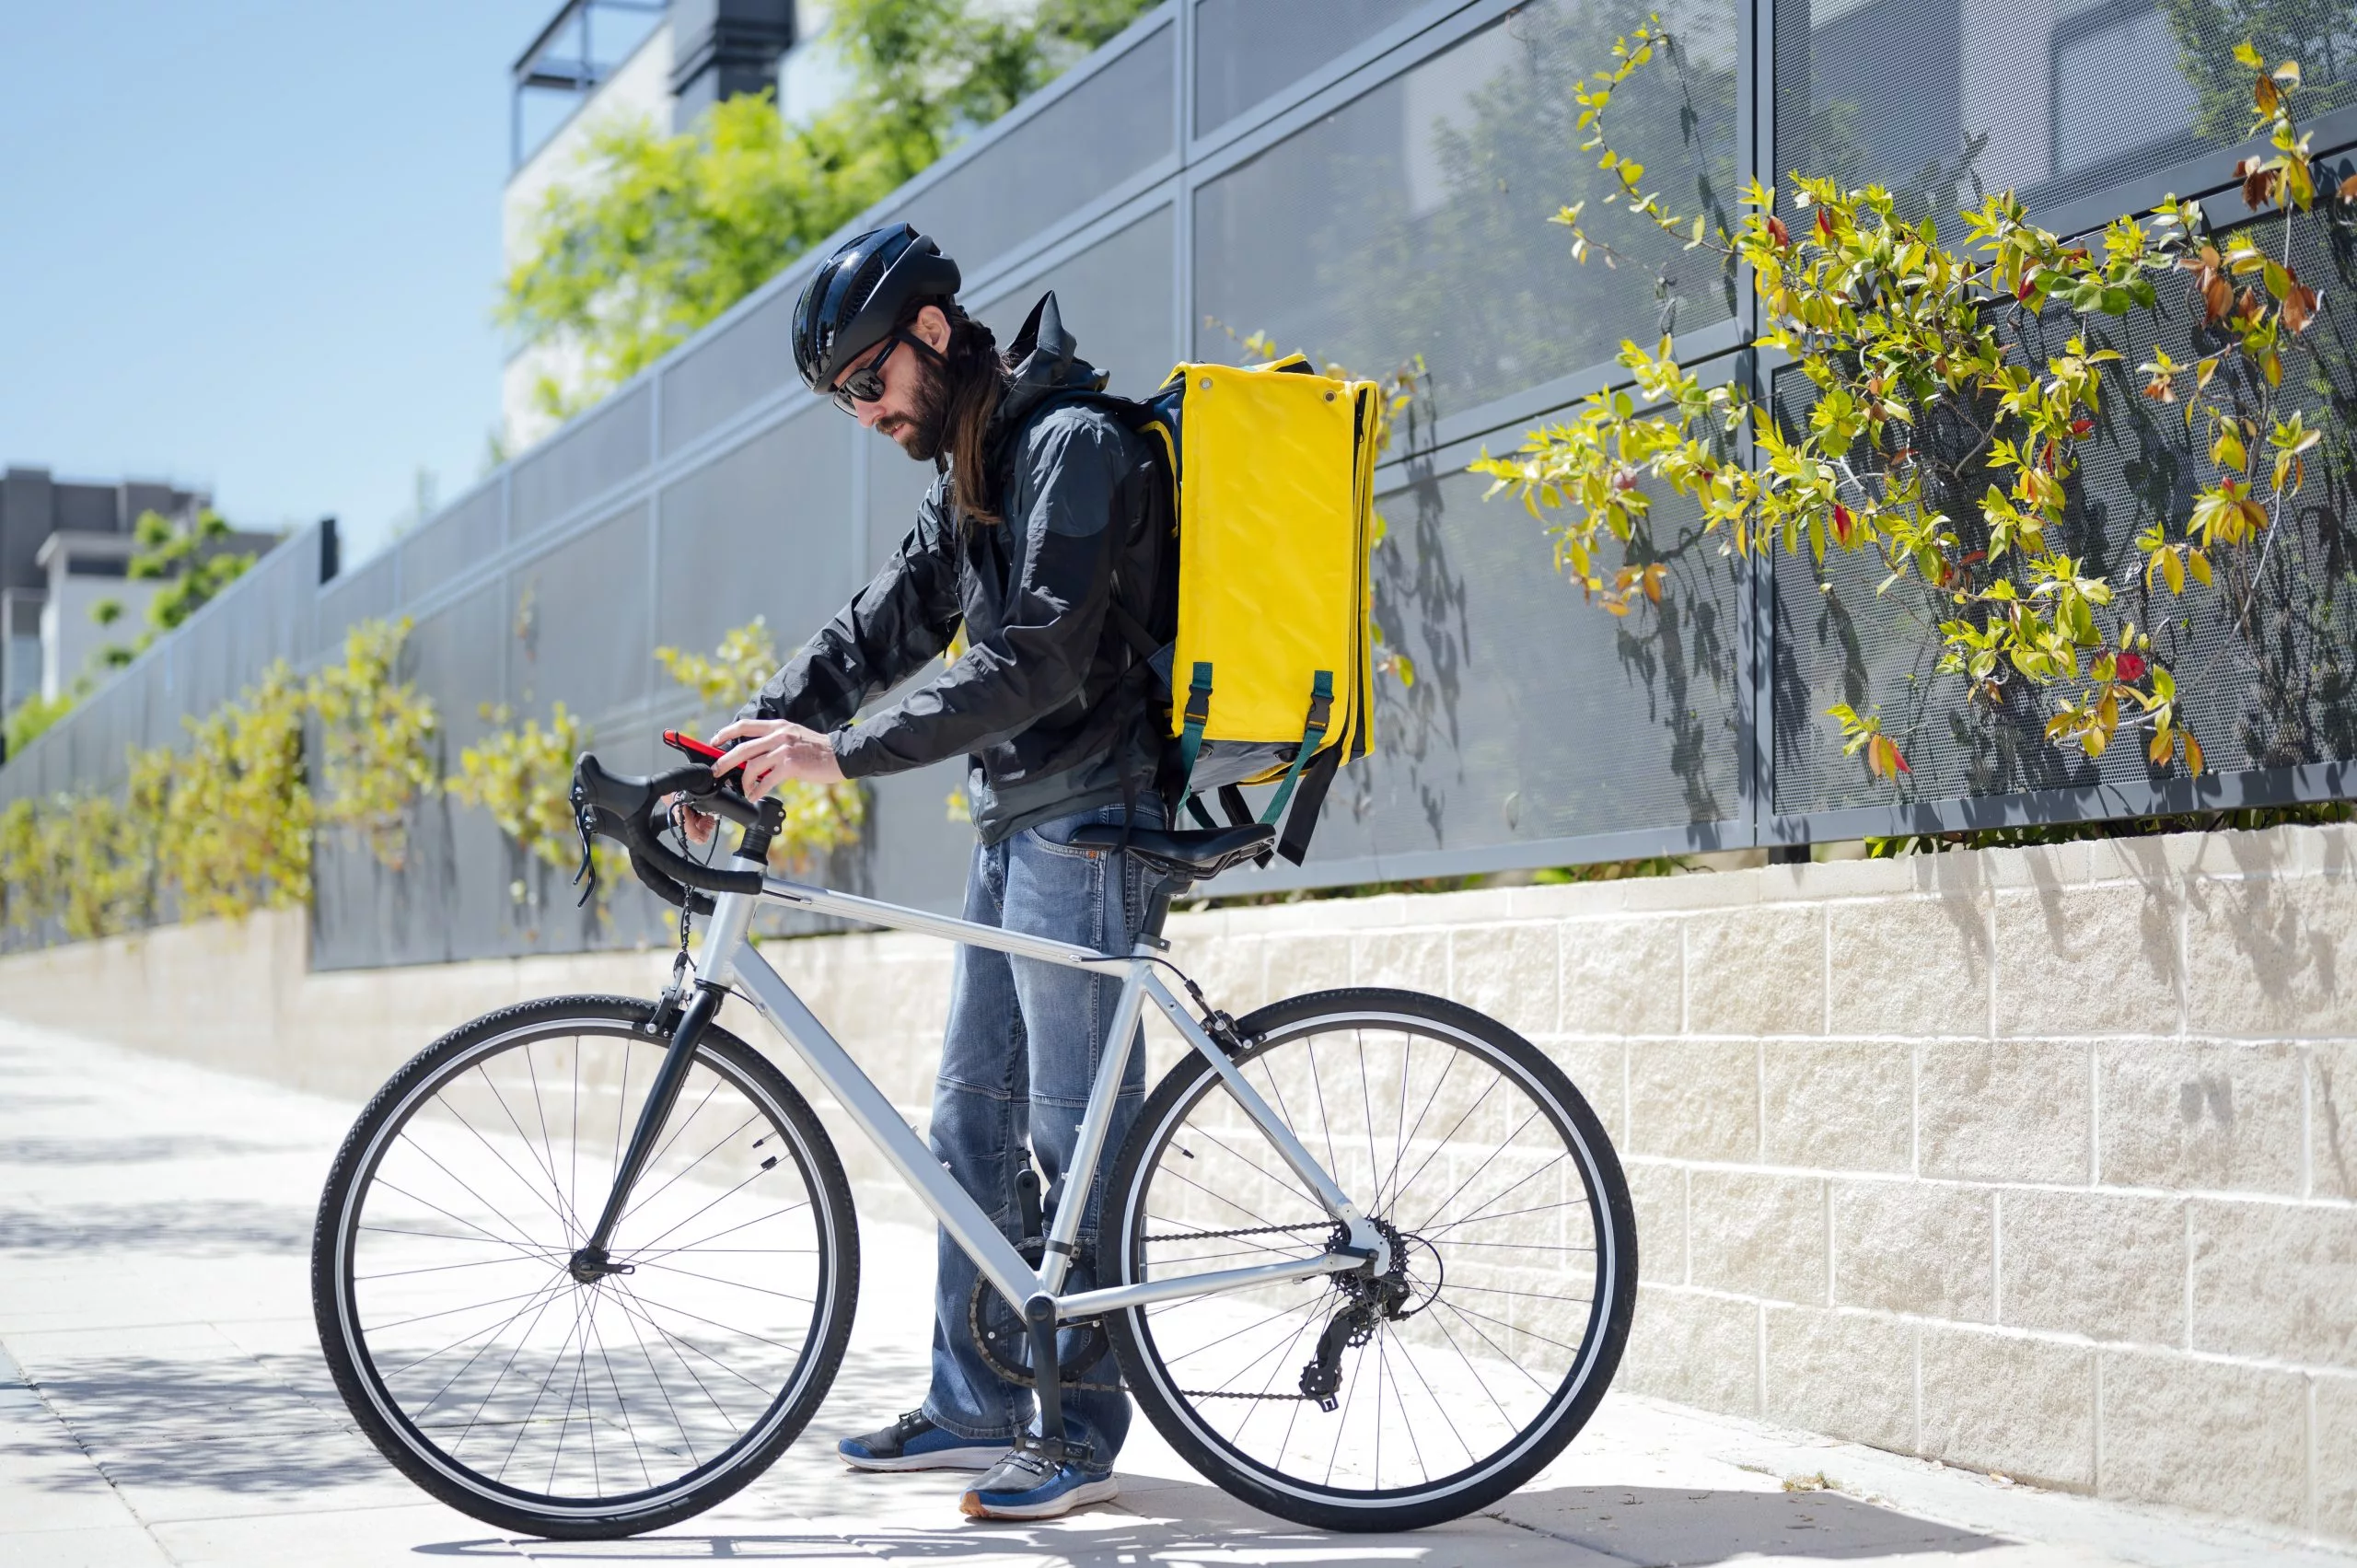 BTrack Universal, Antifurto localizzatore GPS per biciclette